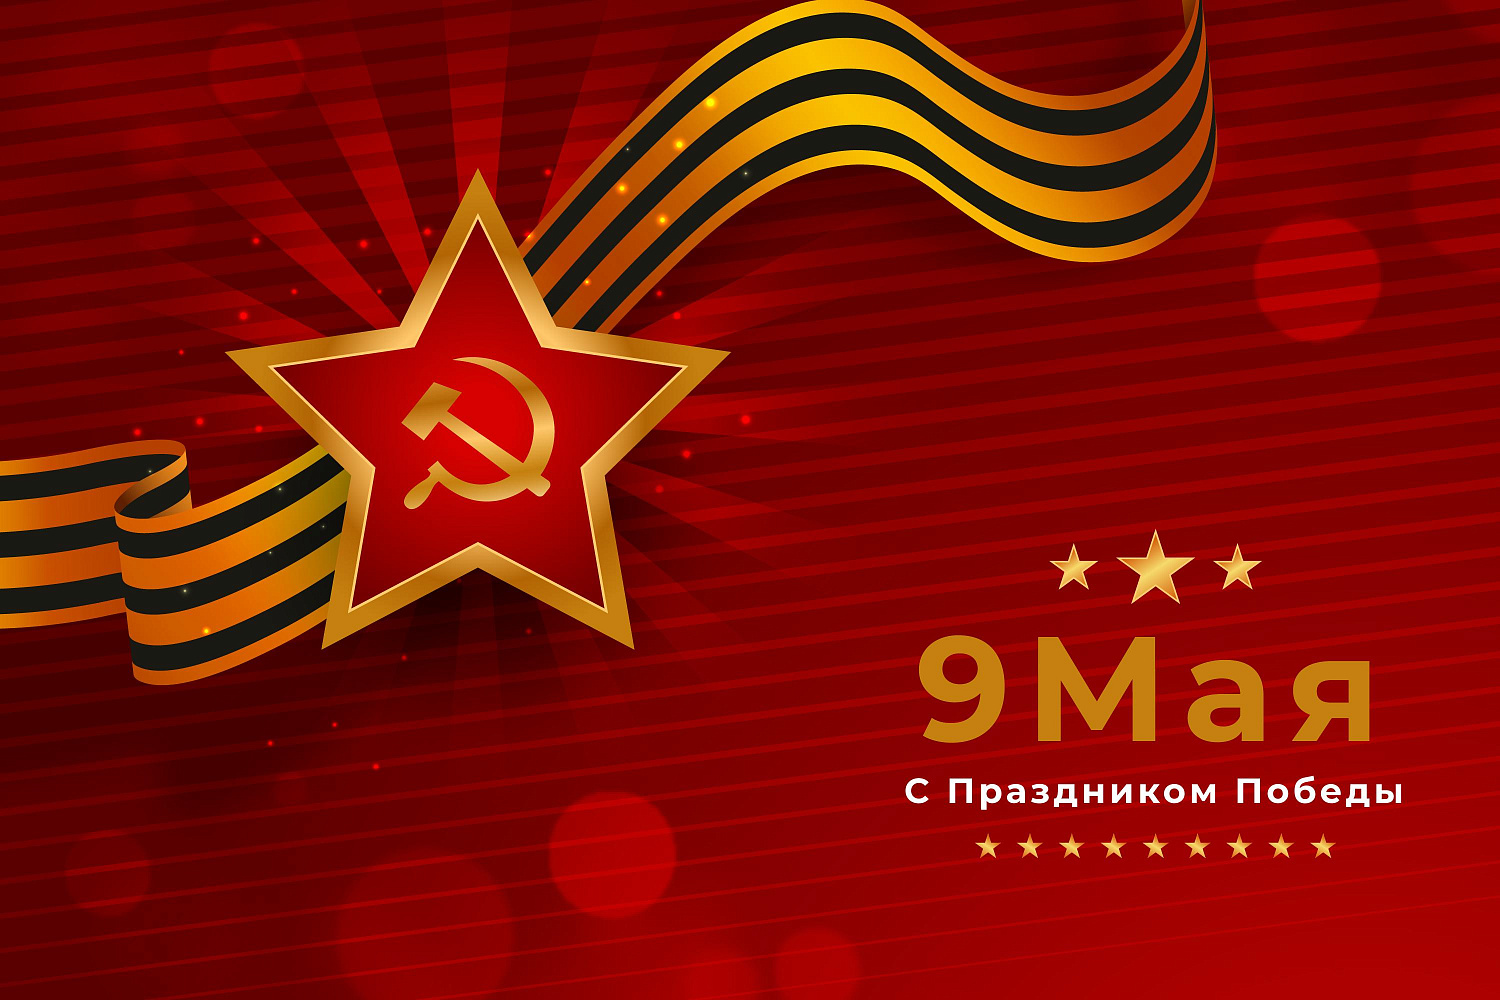 Торгово-промышленная палата Чувашской Республики поздравляет с праздником Великой Победы!